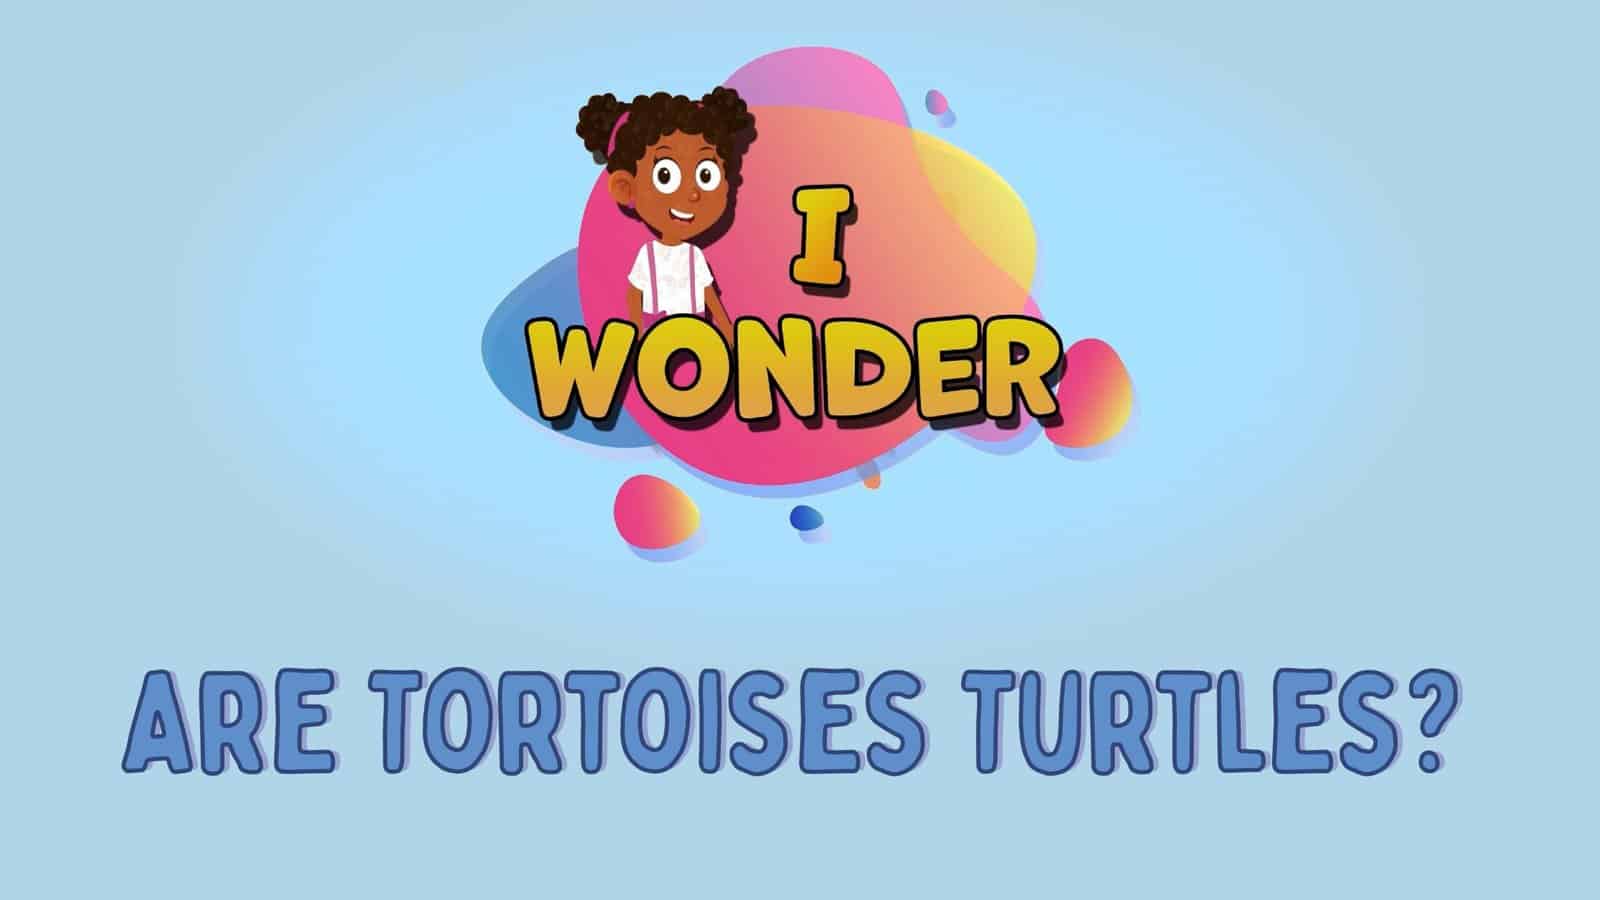 Are Tortoises Turtles?